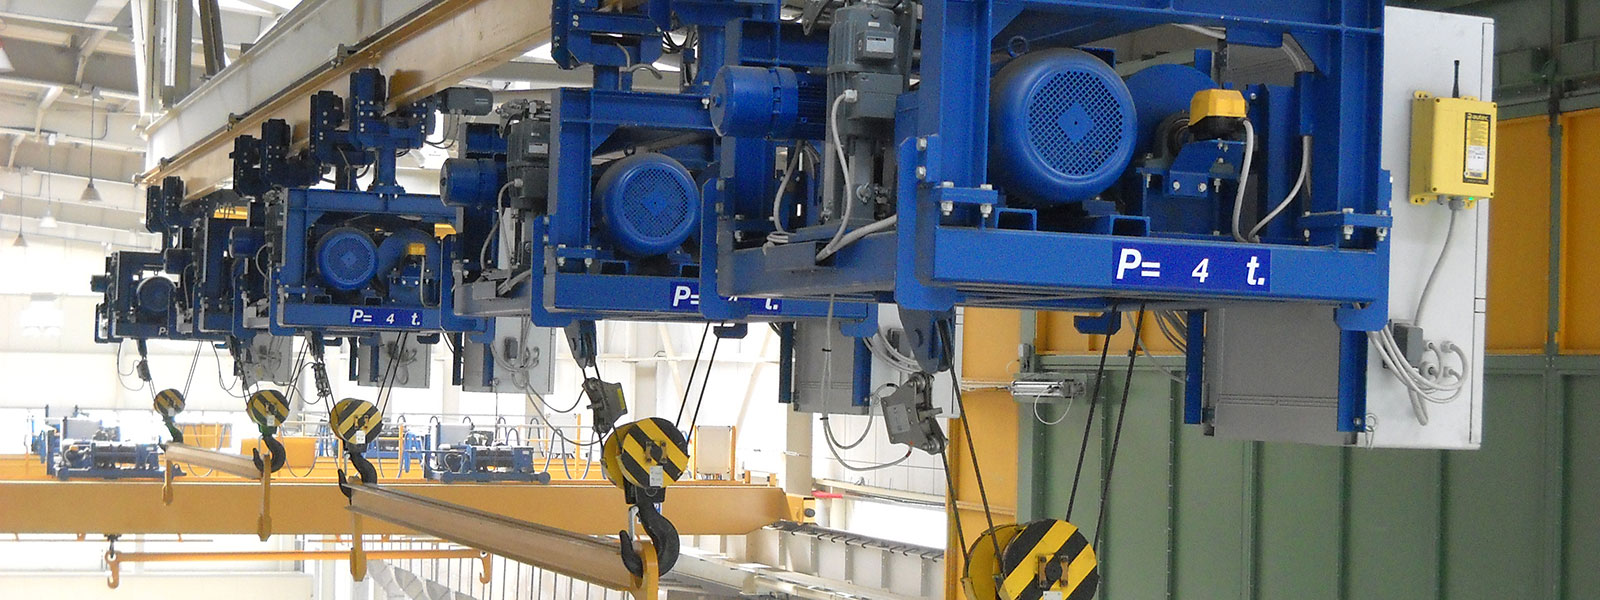 Crane Engineering : attrezzature amovibili di presa del carico